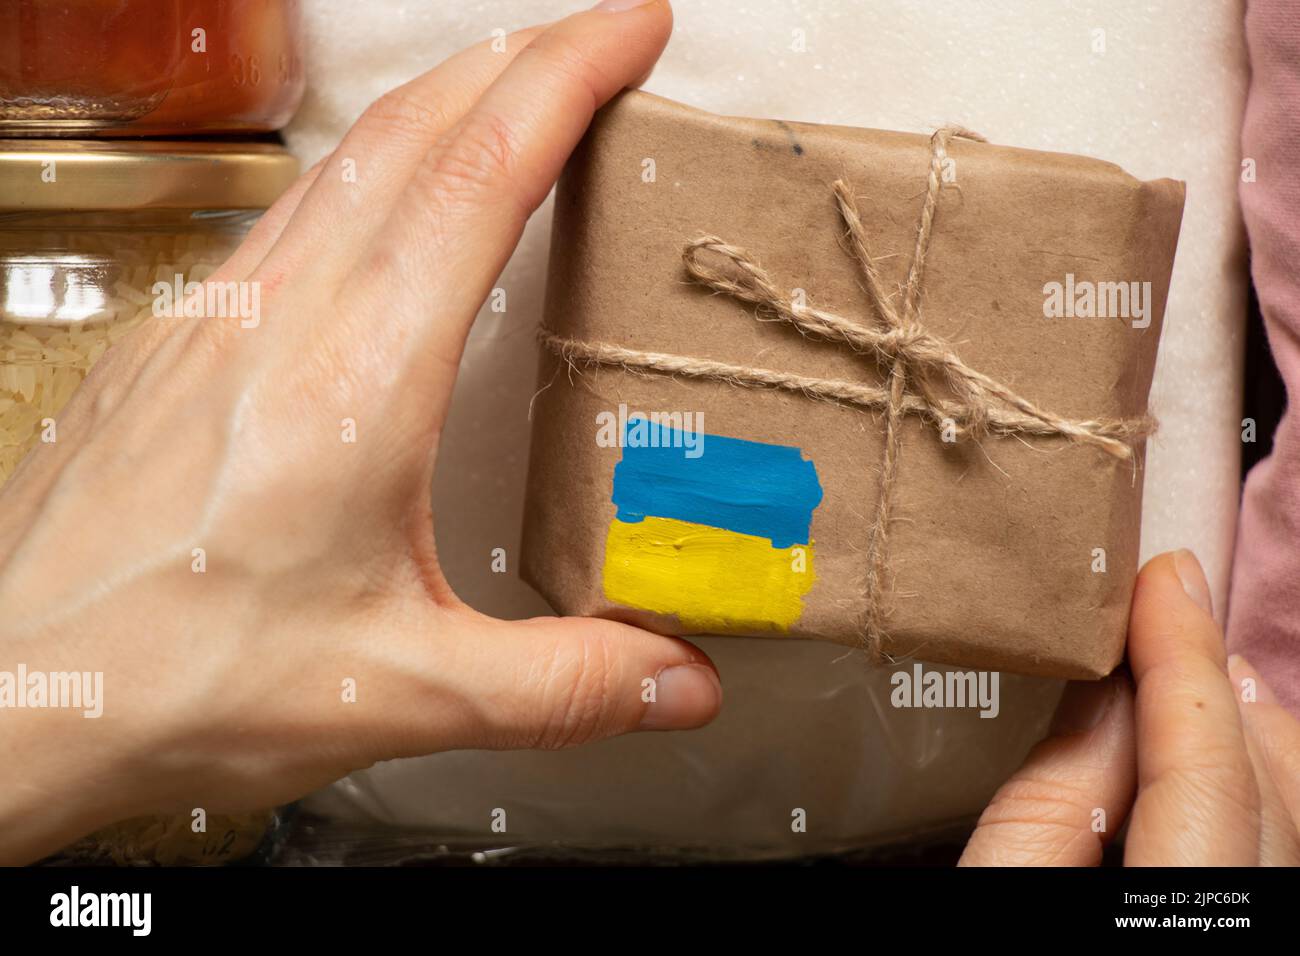 Une boîte avec un drapeau jaune-bleu peint de l'Ukraine dans la main d'une femme, l'aide humanitaire pour l'Ukraine de la part du peuple Banque D'Images